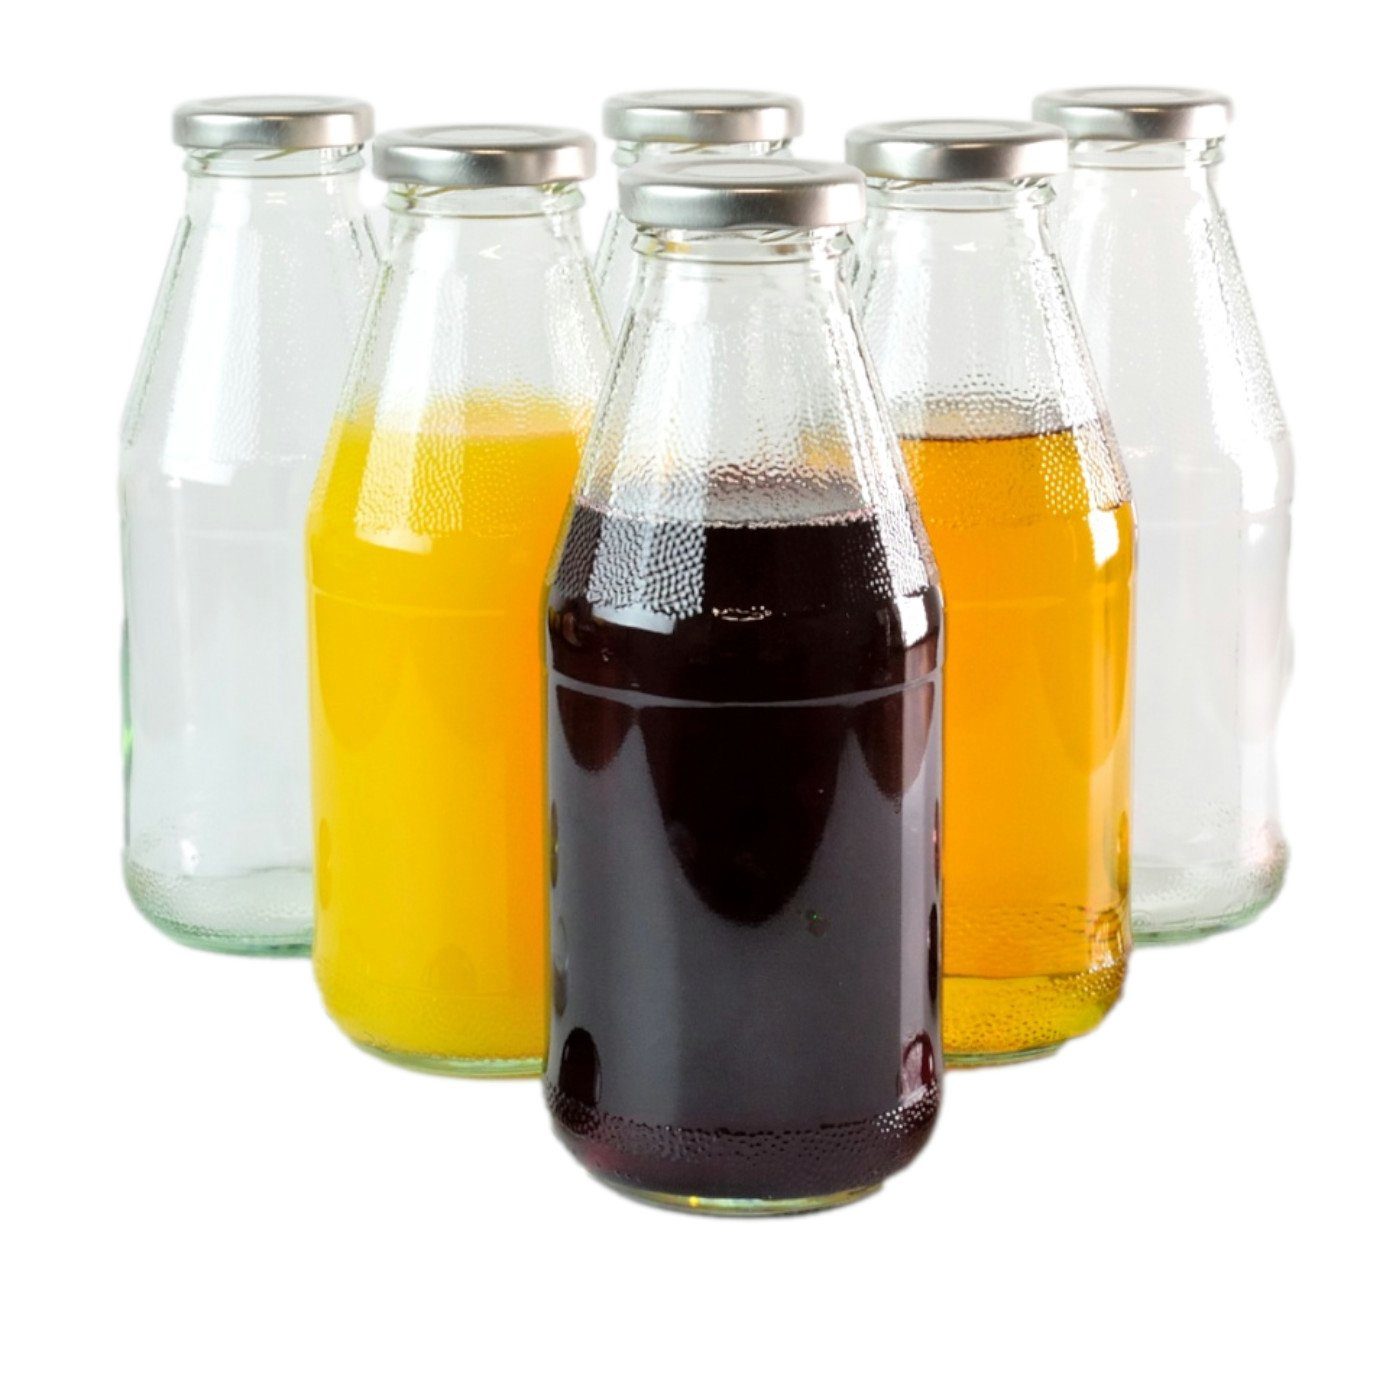 gouveo Trinkflasche Saftflaschen 500 ml mit Schraub-Deckel - Kleine Flasche 0,5 l, 6er Set, silberfarben | Trinkflaschen